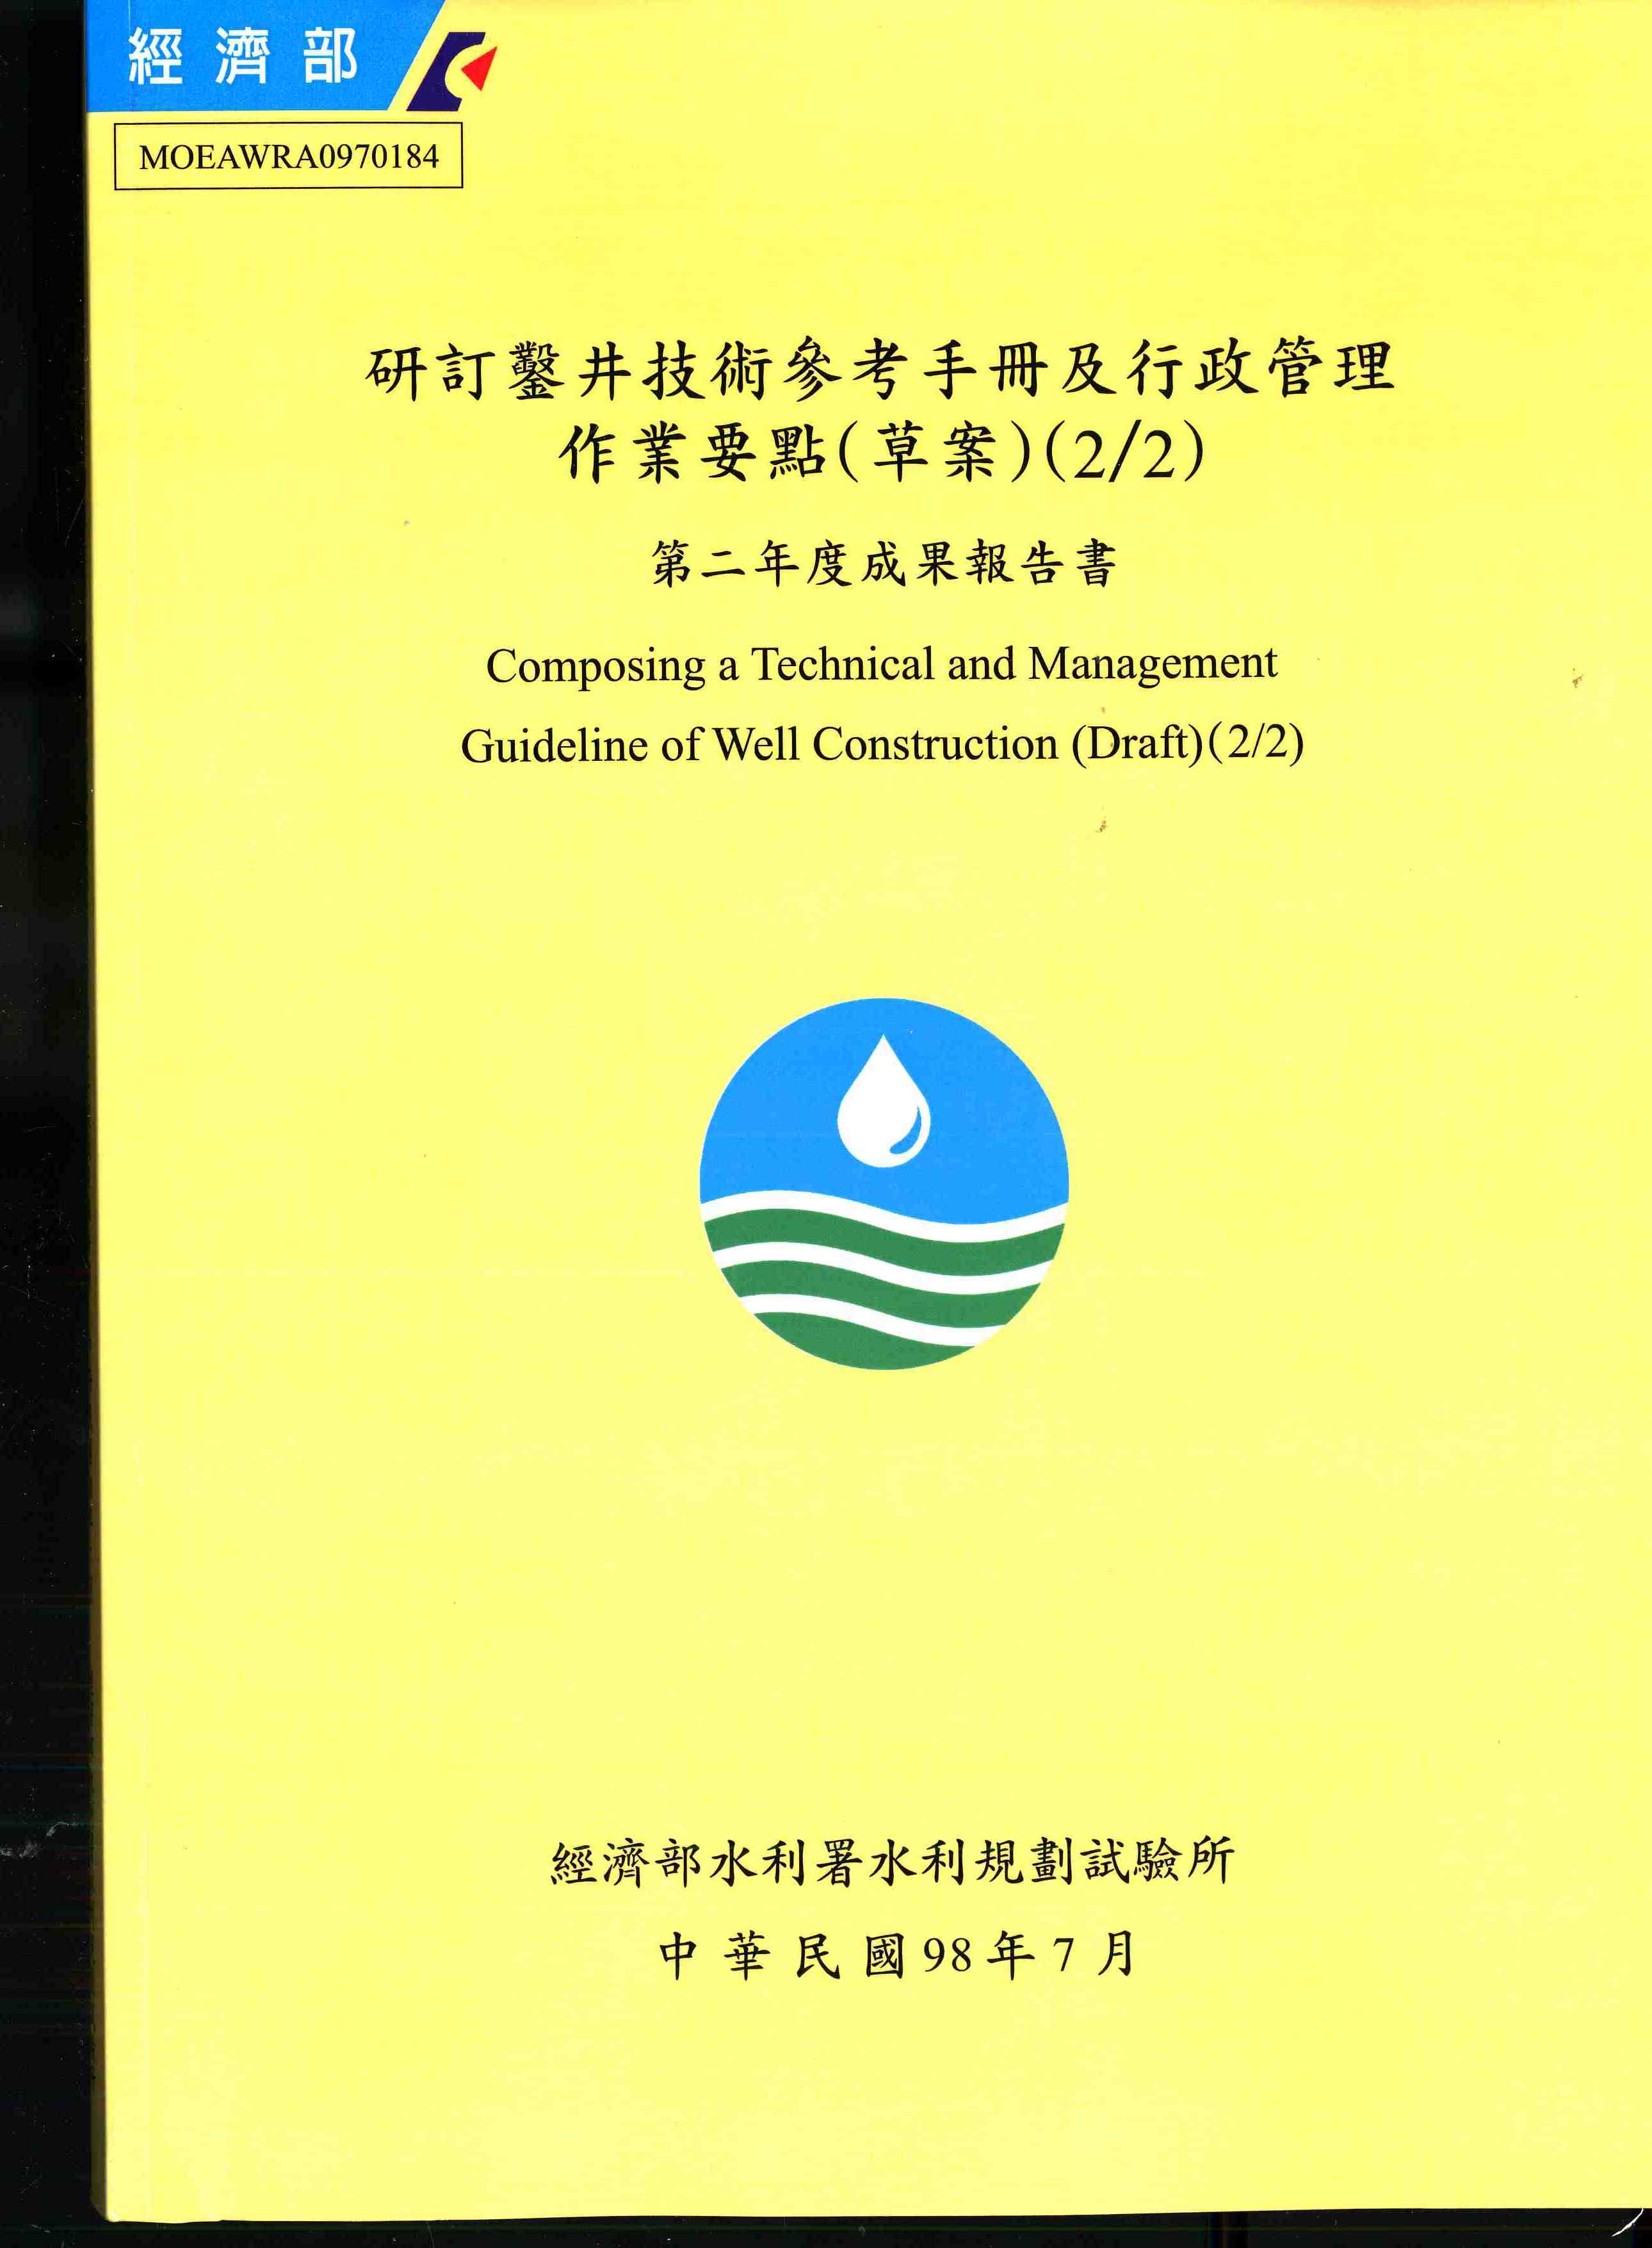 研訂鑿井技術參考手冊及行政管理作業要點(草案)(2/2)第二年度成果報告書